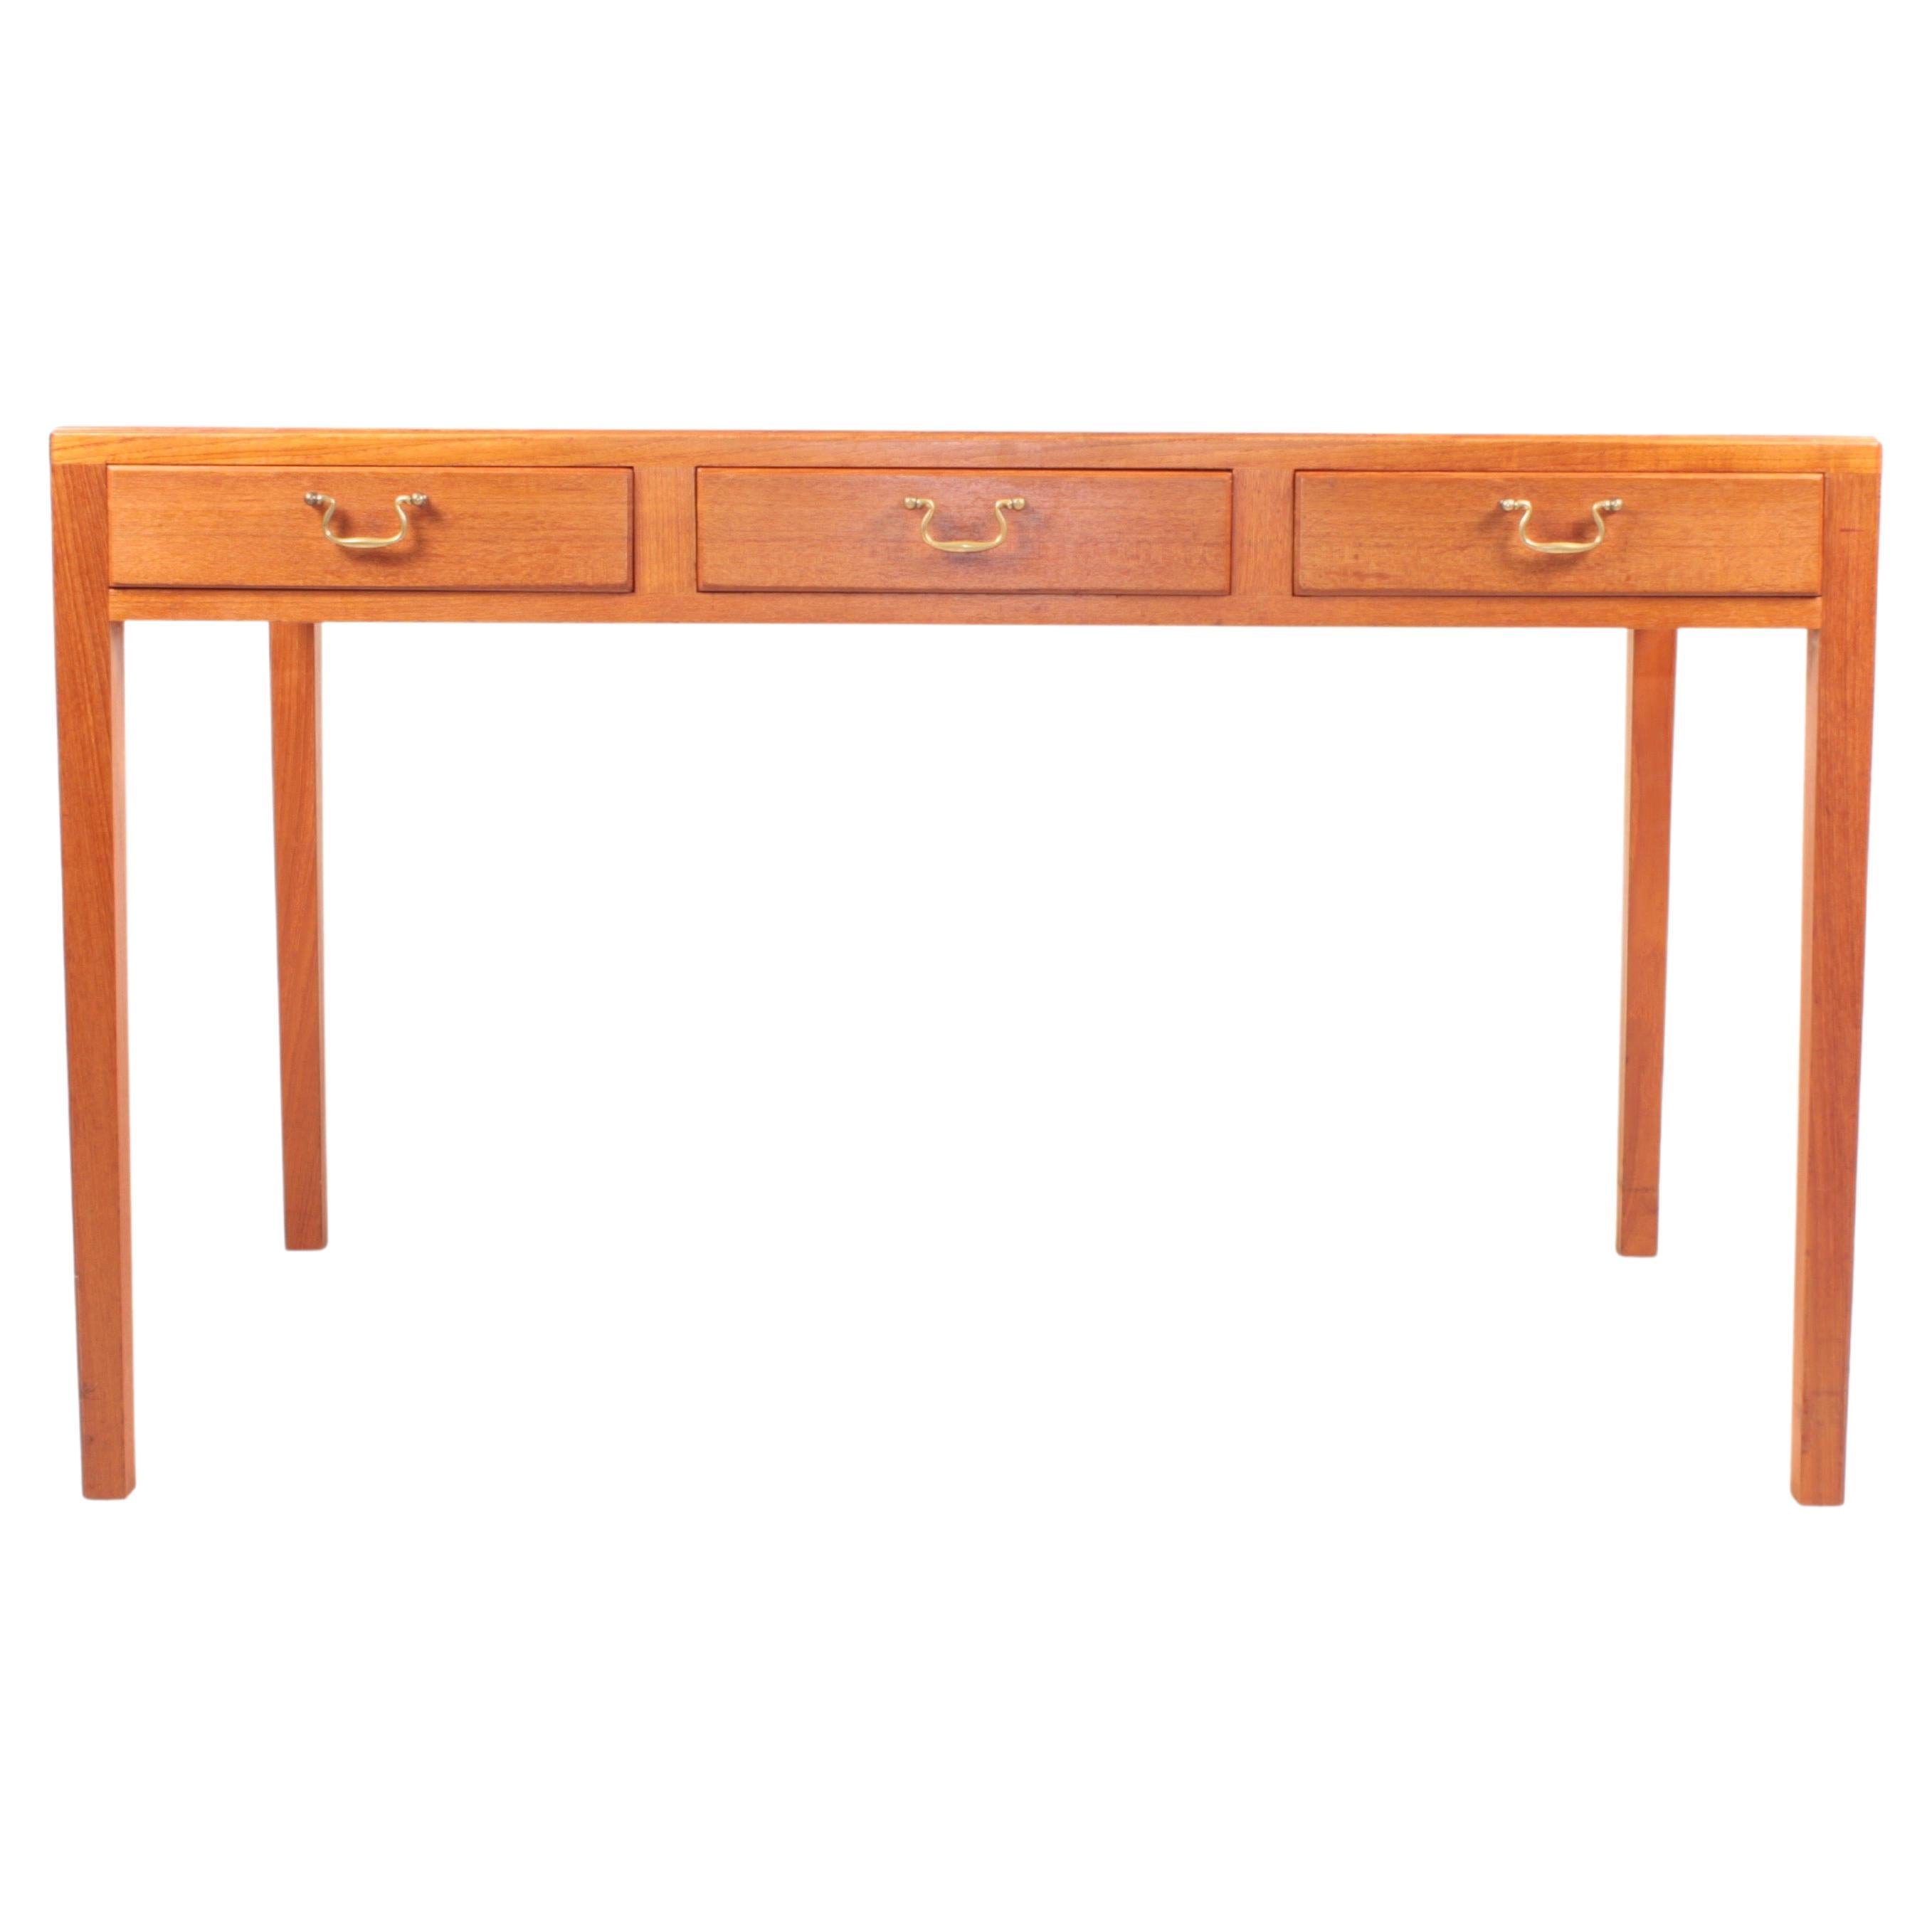 Desk in Teak in Style of Ole Wanscher, Midcentury Danish Design, 1950s